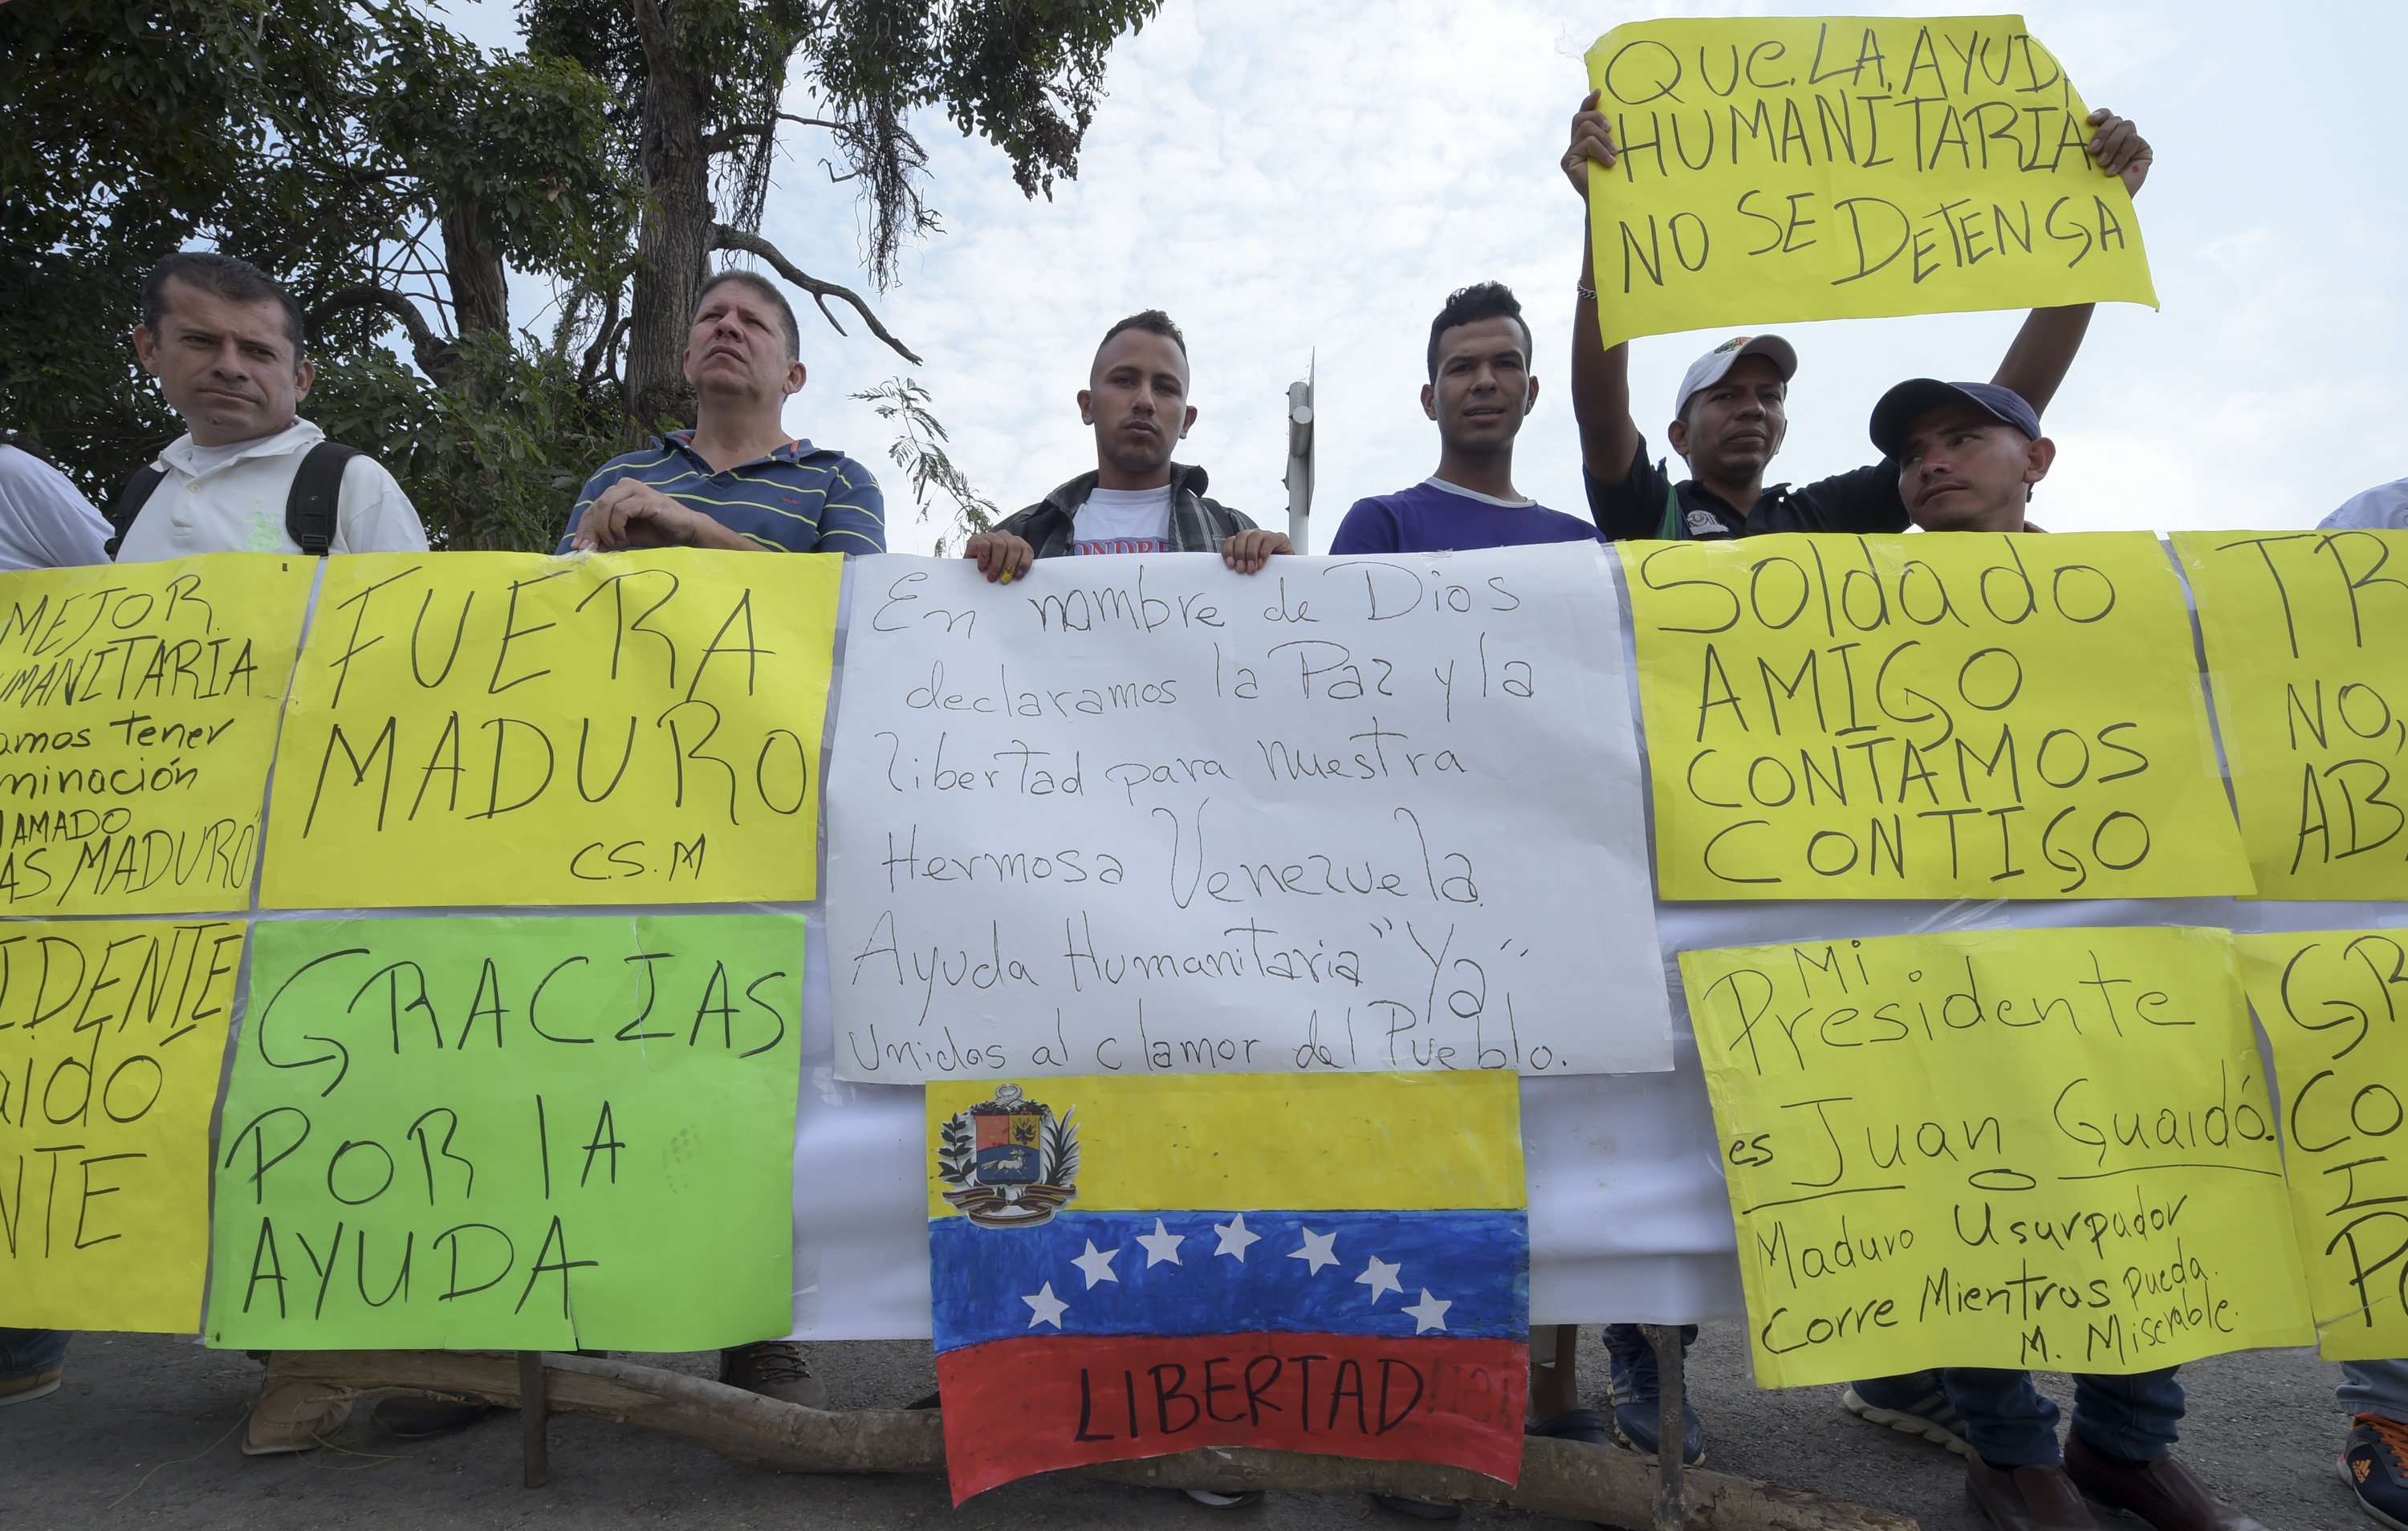 “Contamos contigo”: Venezolanos piden a militares abrir paso para la ayuda humanitaria desde Colombia